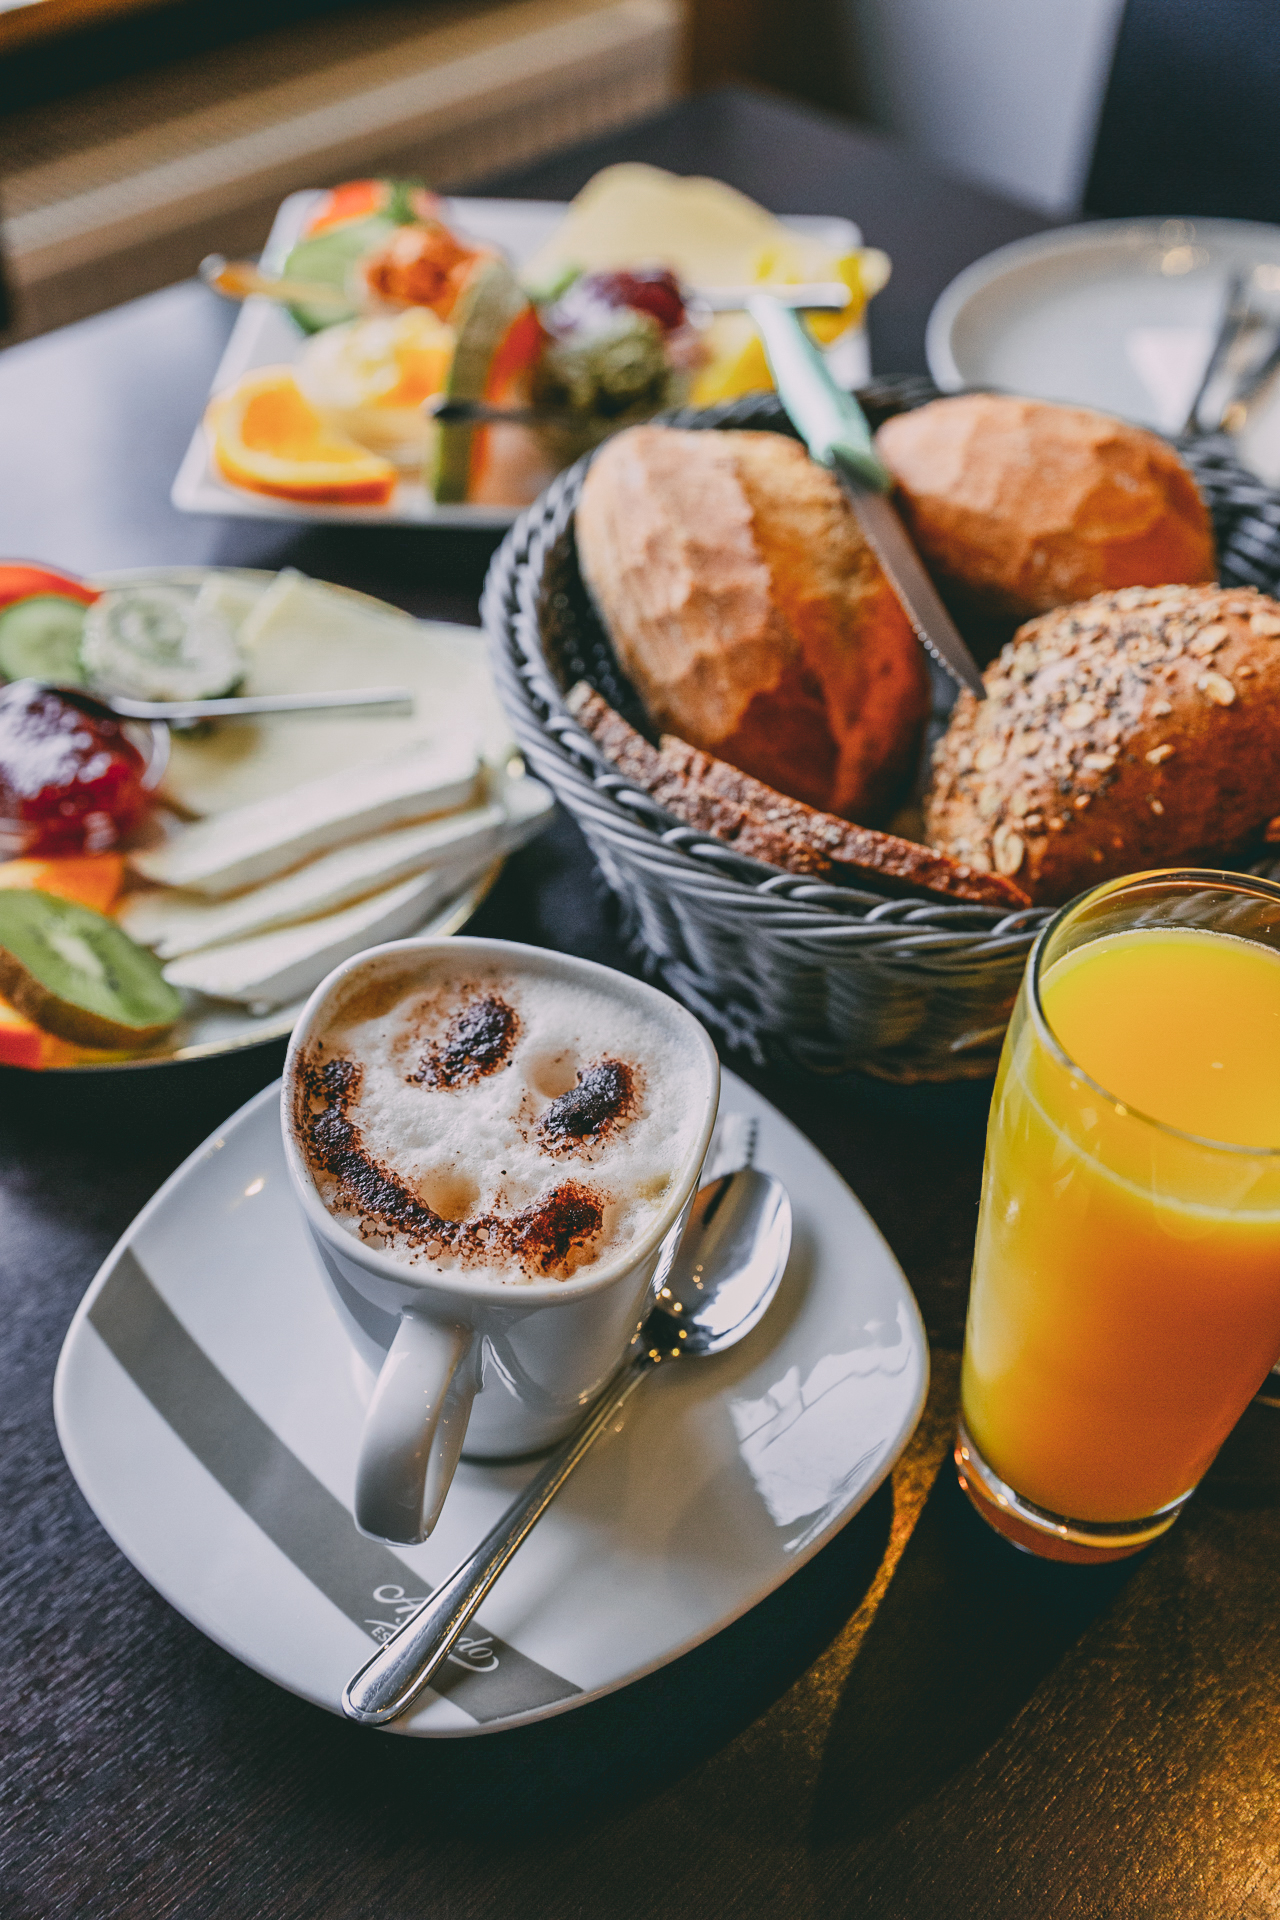 Das Frühstück im Café Milch & Zucker als perfekte Stärkung für einen Ausflug nach Rendsburg